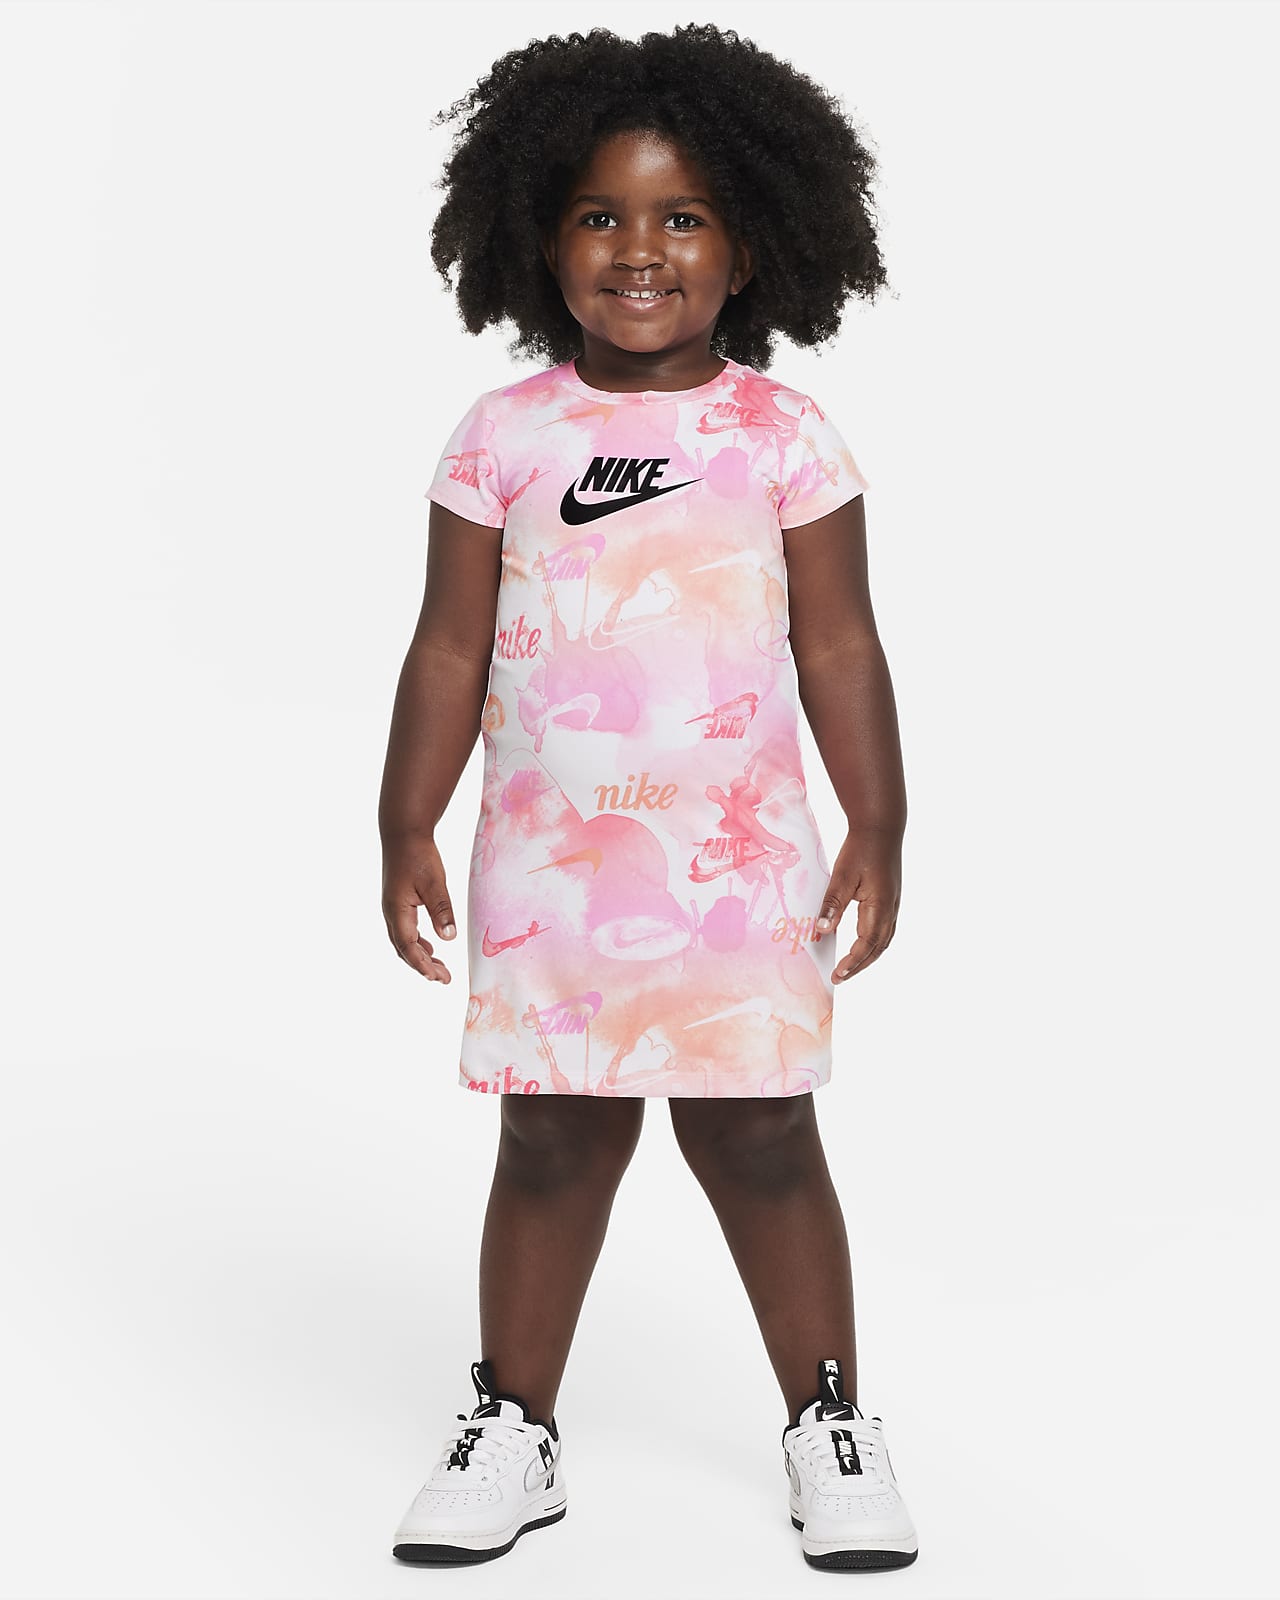 Nike Toddler Summer Daze T-Shirt Dress 